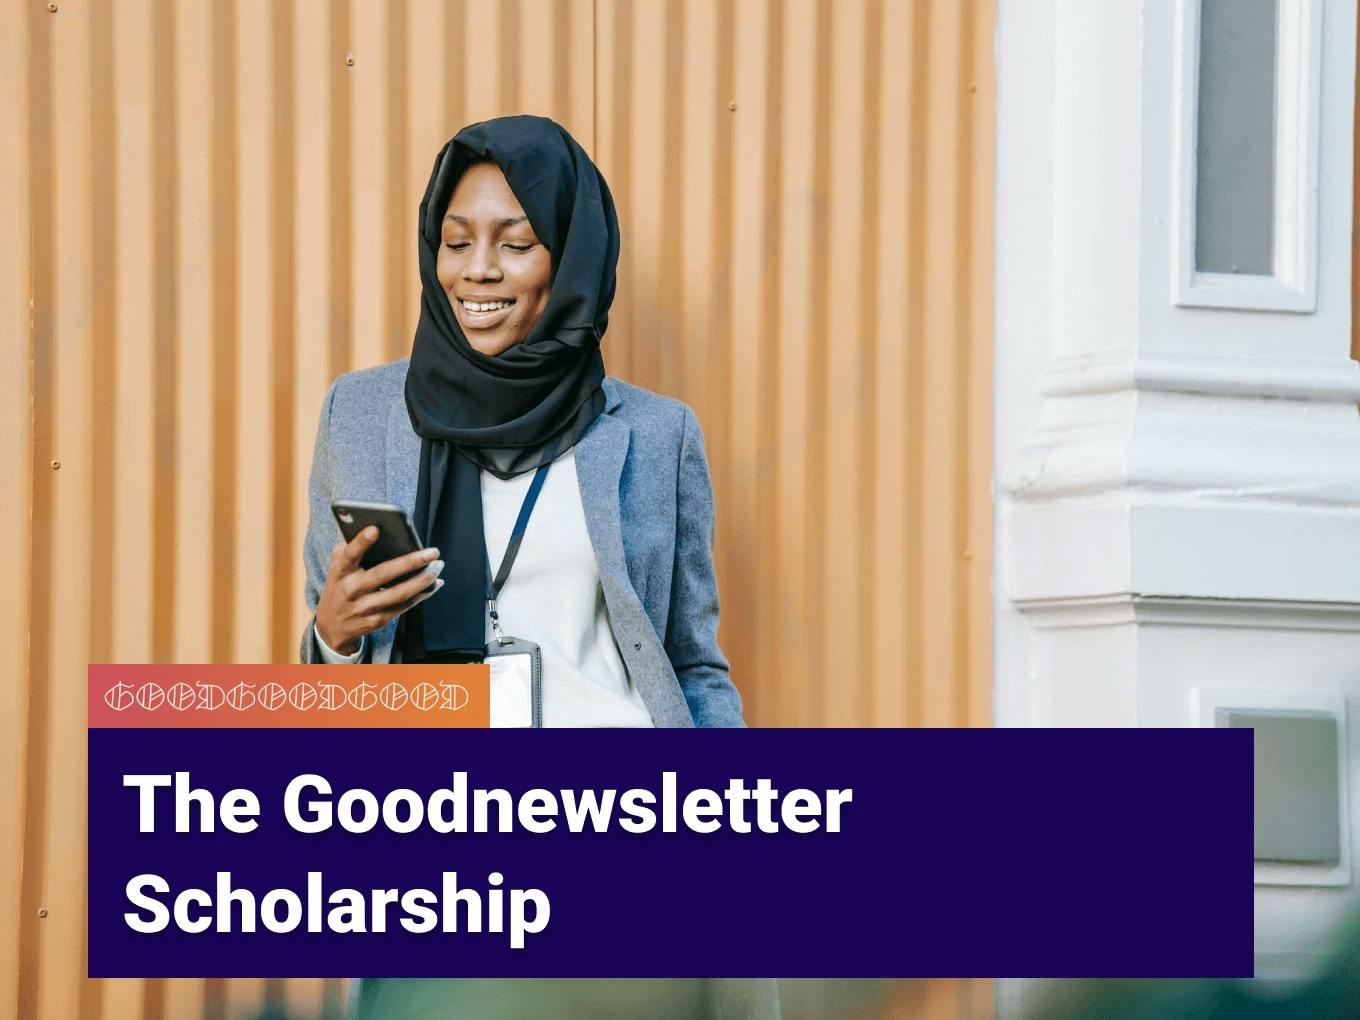 Goodnewsletter Scholarship